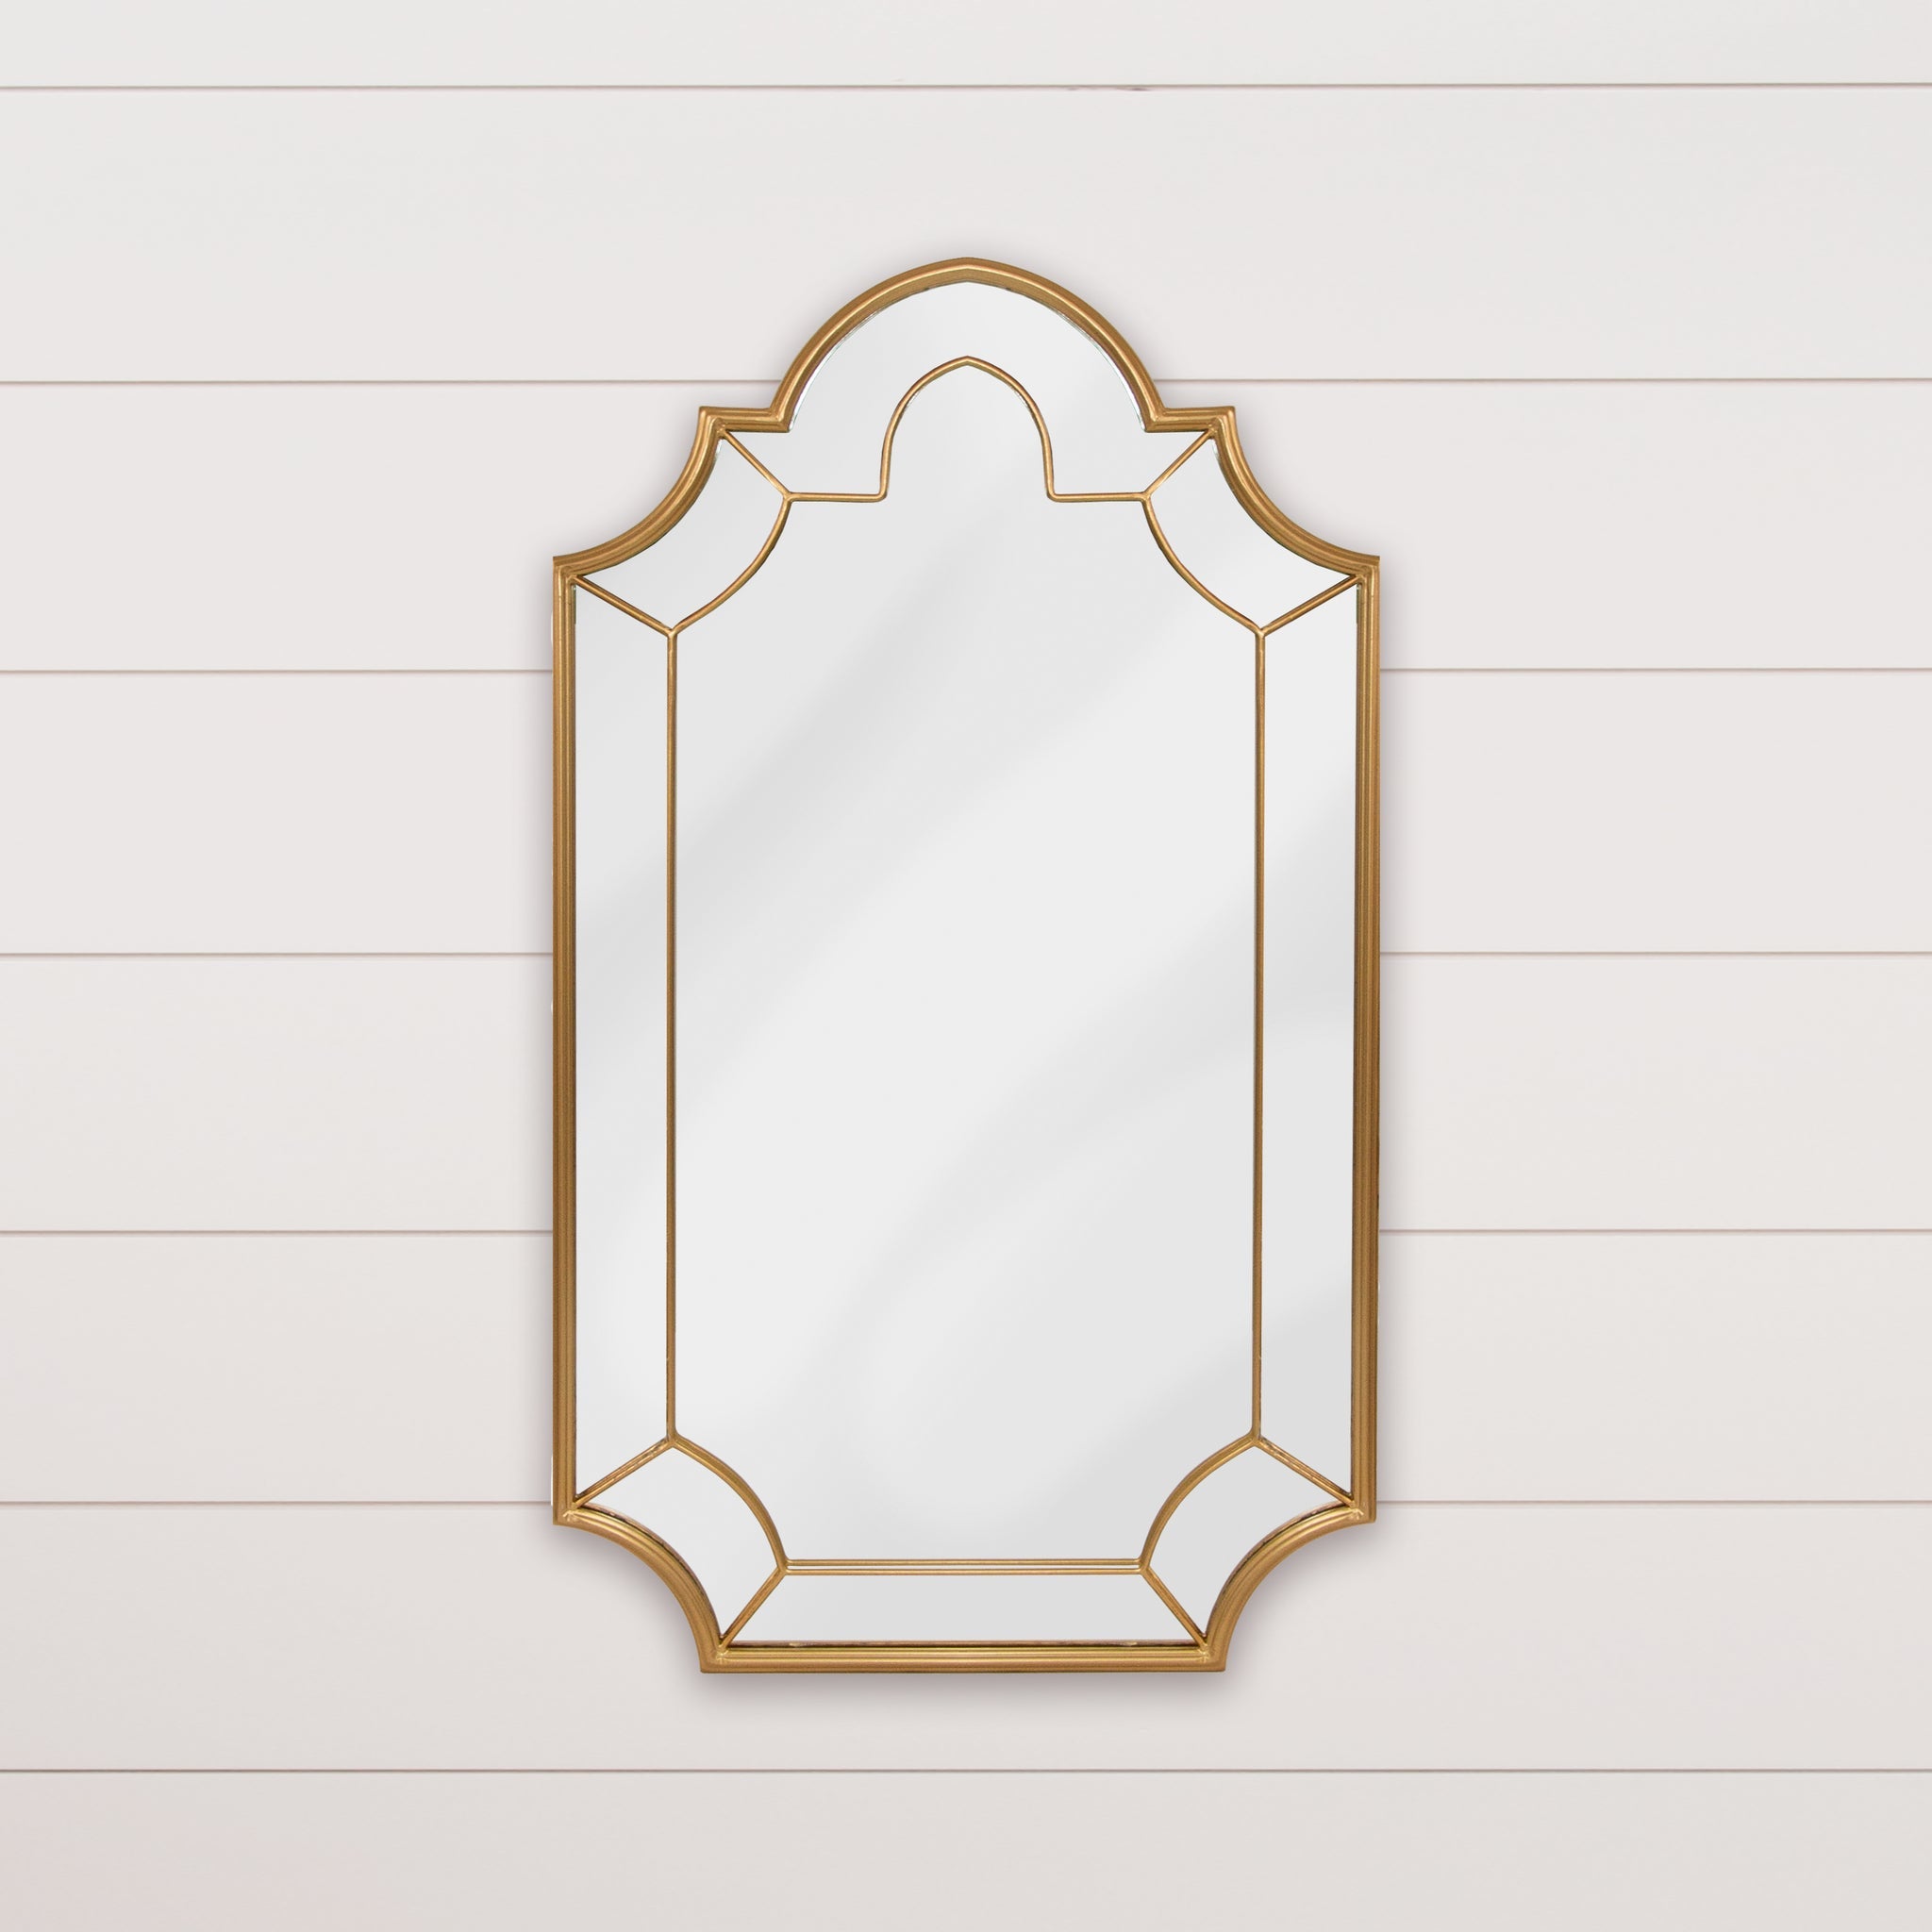 Mirror - Arched, Elegant Antiqued Gold Leaf